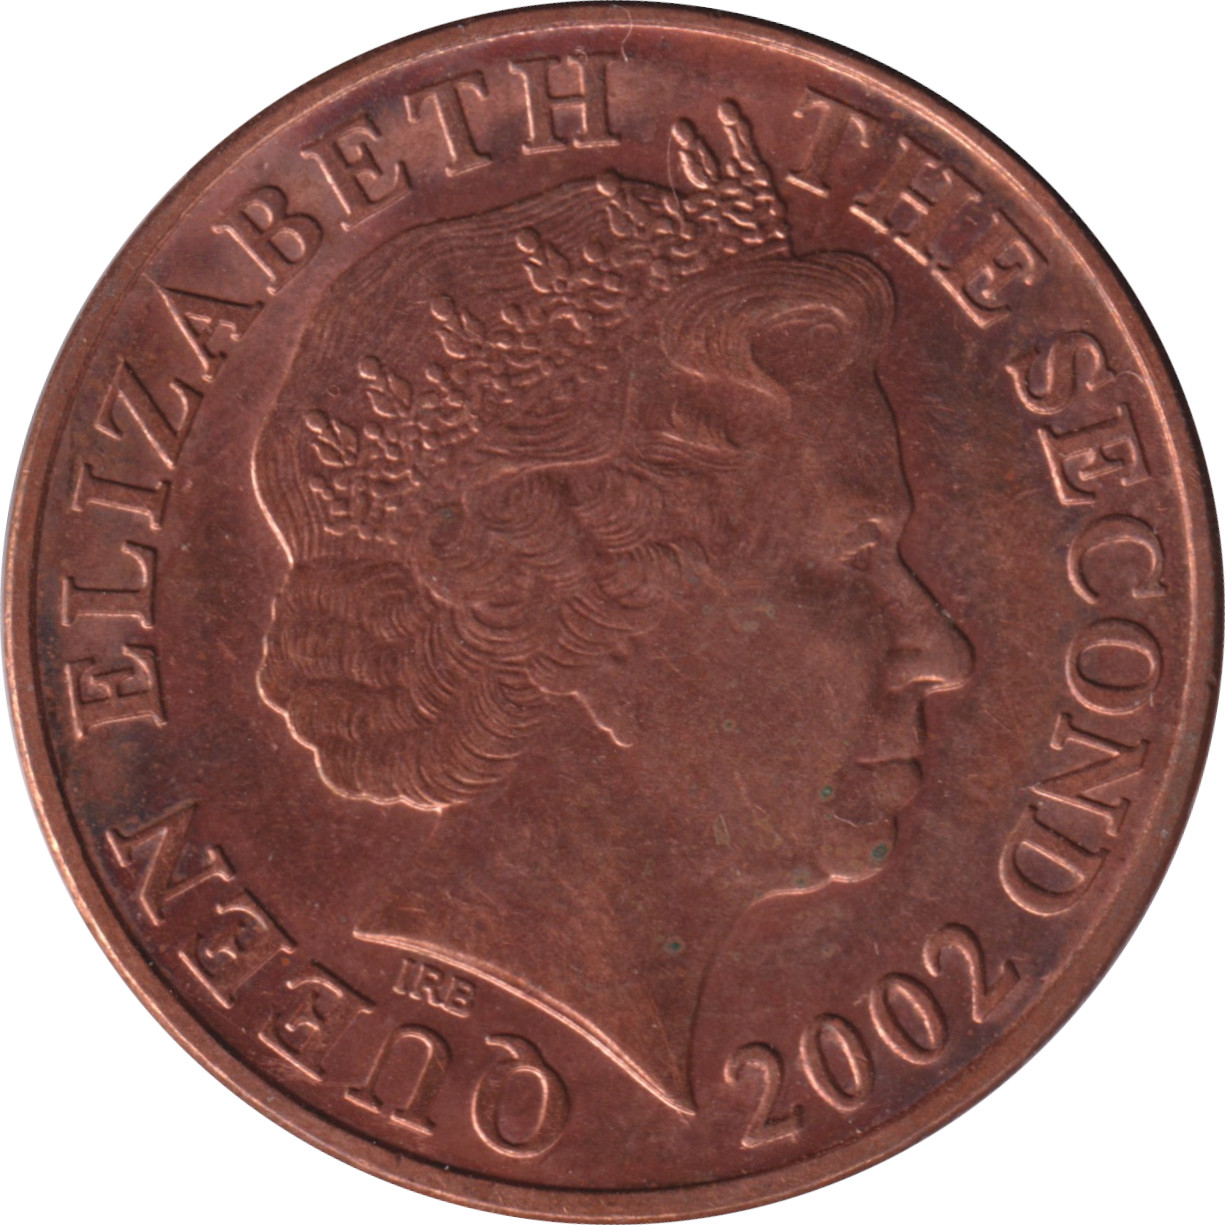 2 pence - Elizabeth II - Tête agée